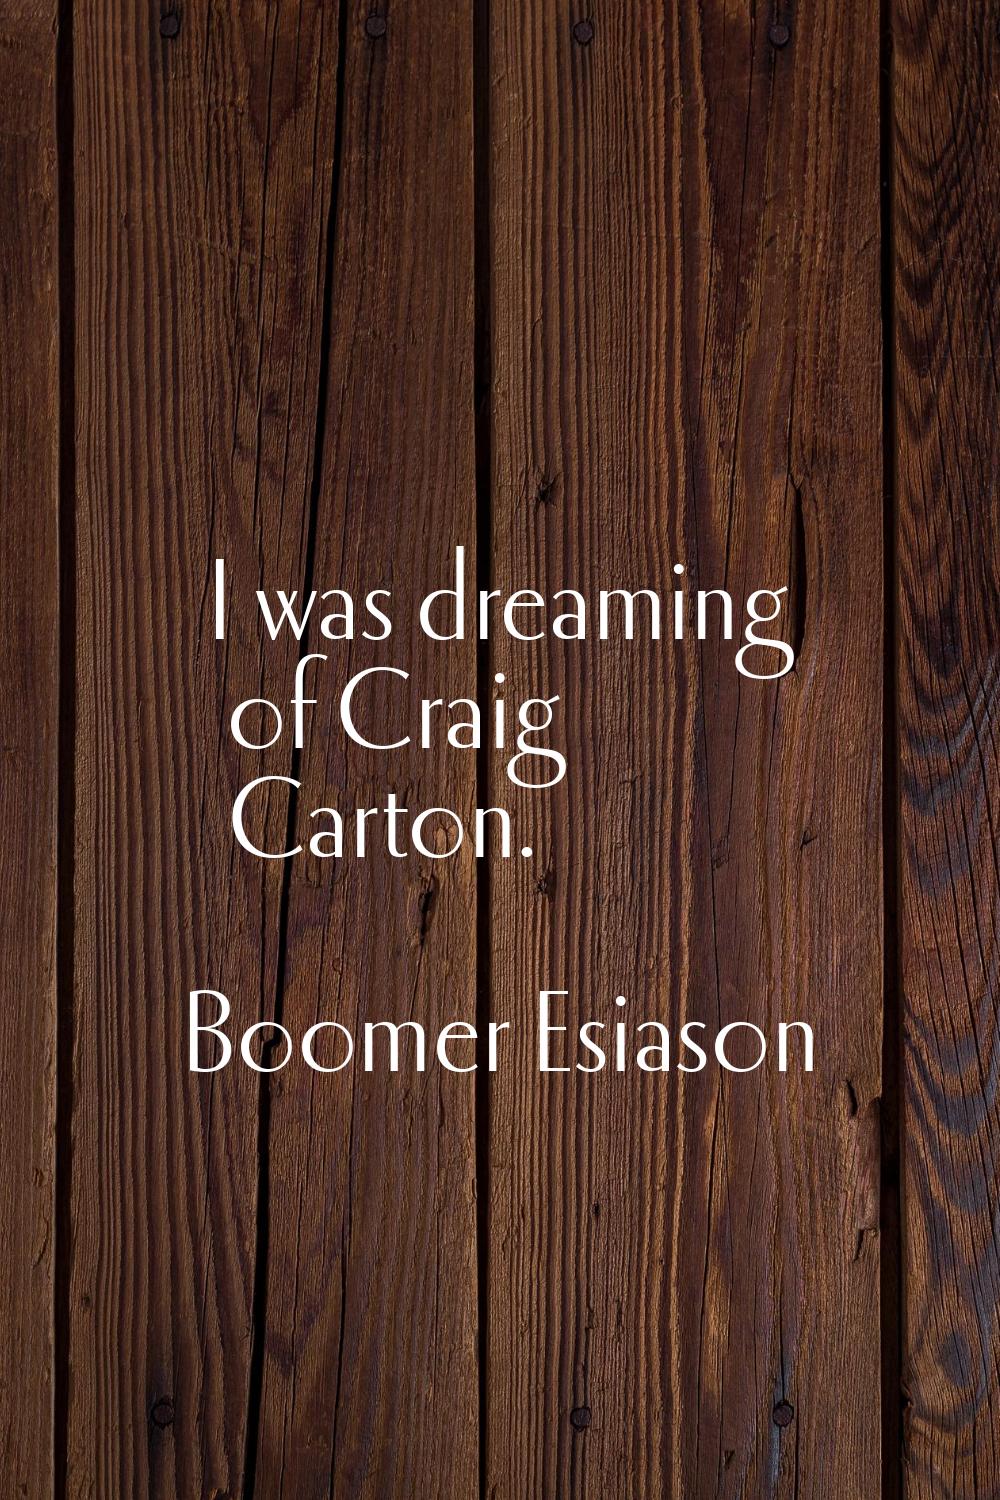 I was dreaming of Craig Carton.